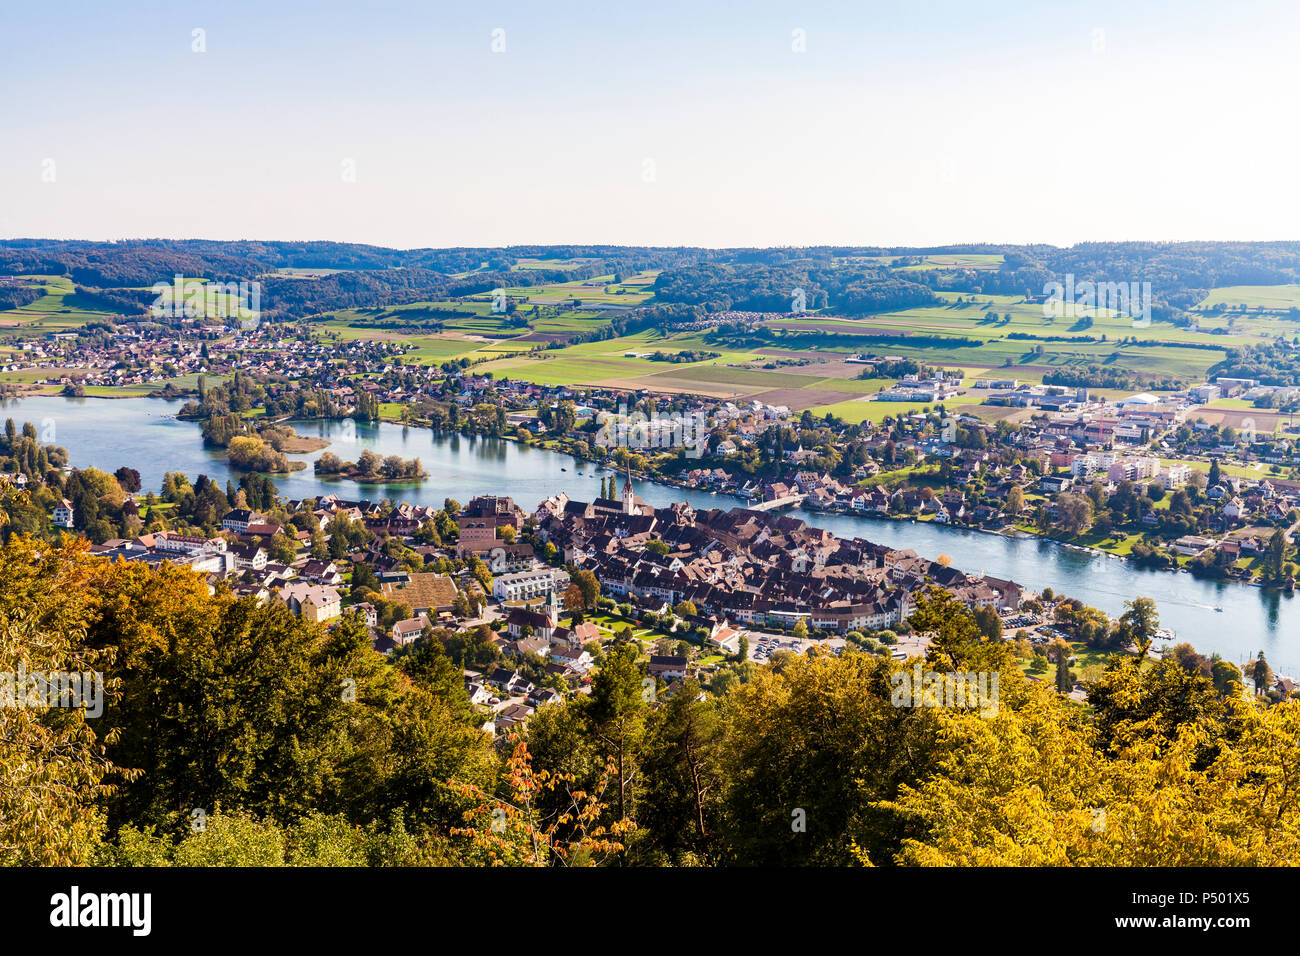 La Suisse, canton de Schaffhouse, Stein am Rhein, le lac de Constance, le Rhin, paysage urbain Banque D'Images